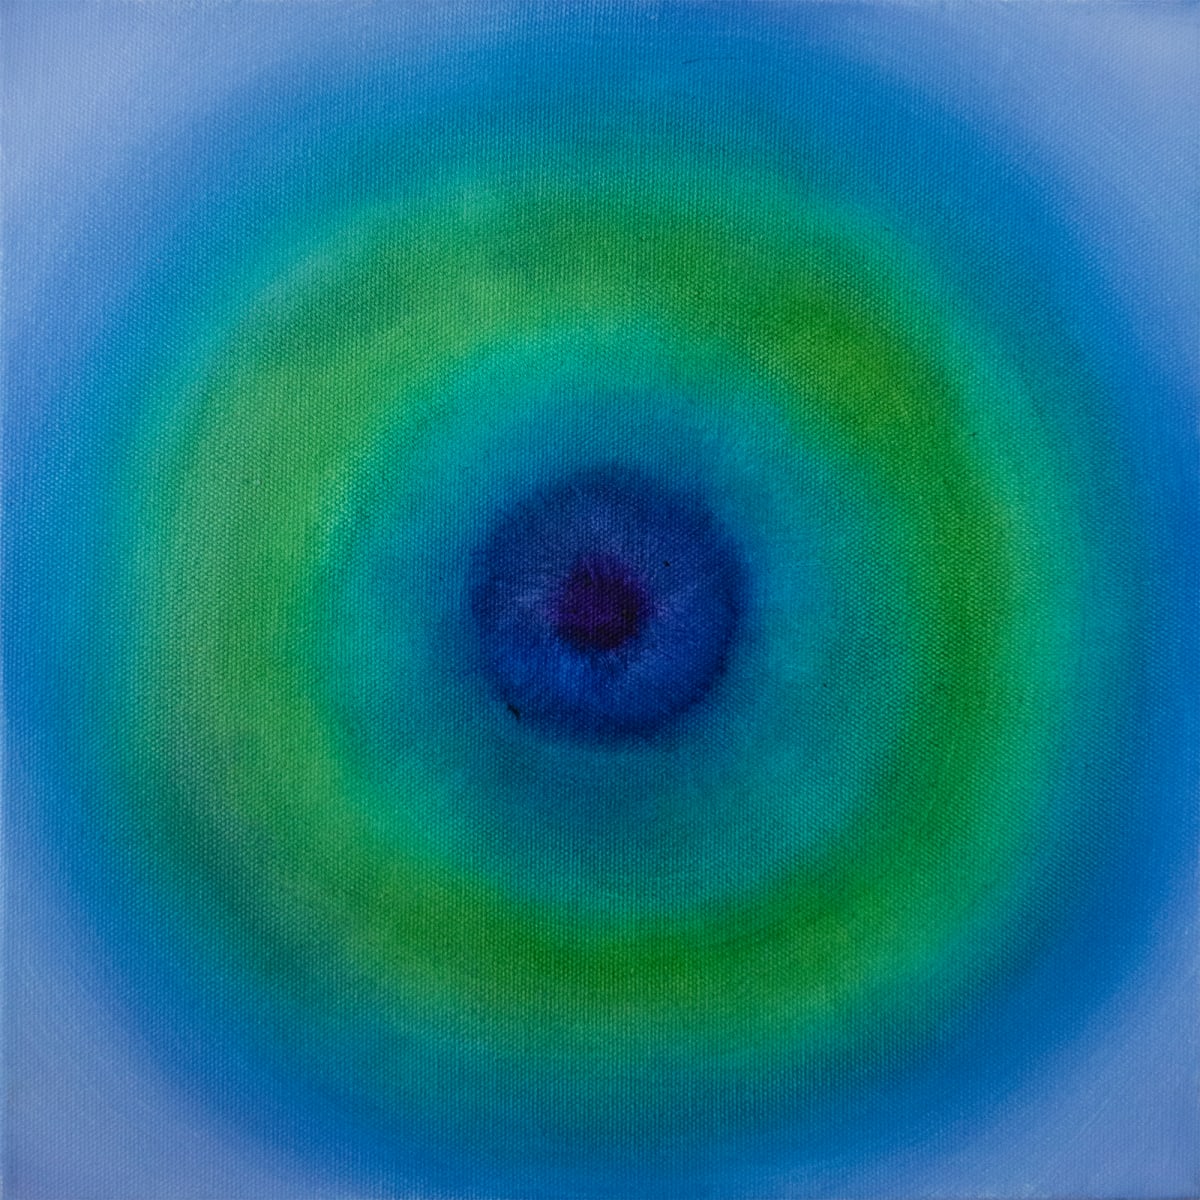 Untitled #334 (Soft Blue Target) 